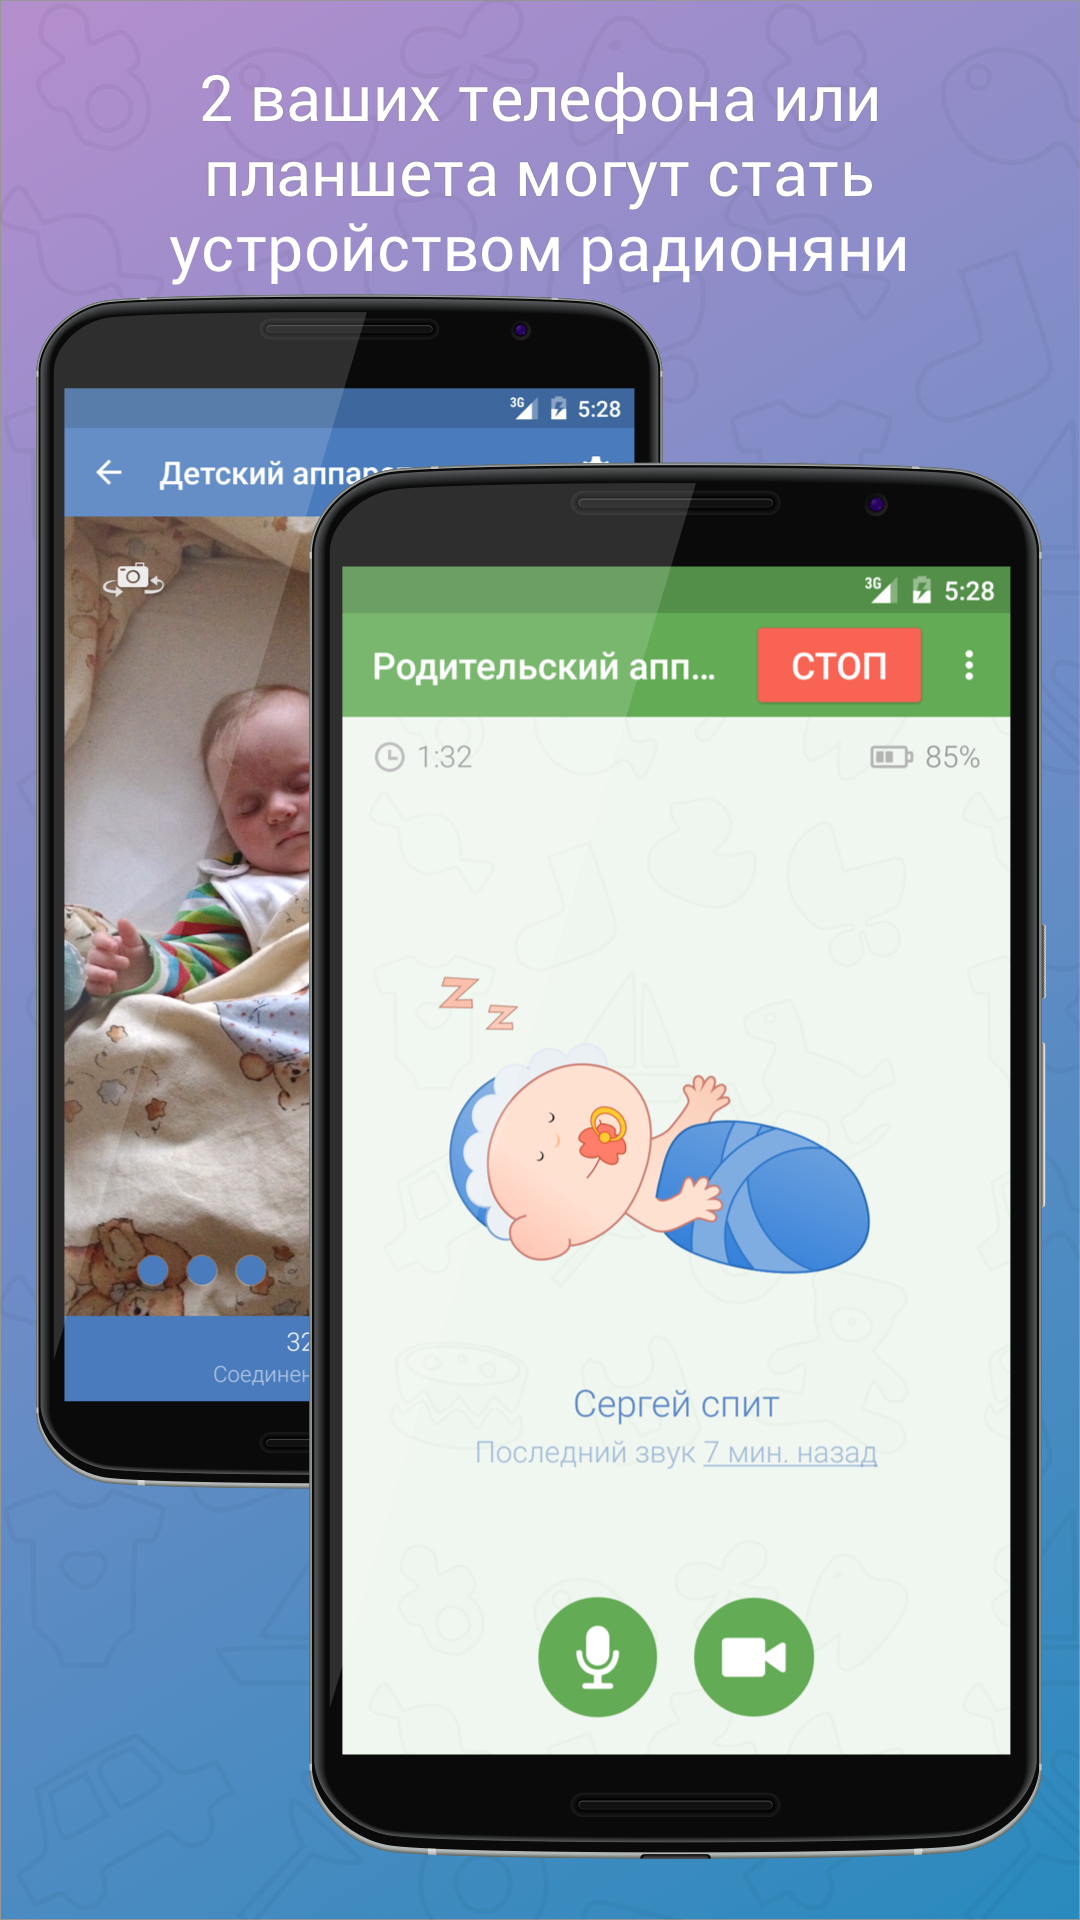 Android application Baby Monitor 3G - Video Nanny screenshort